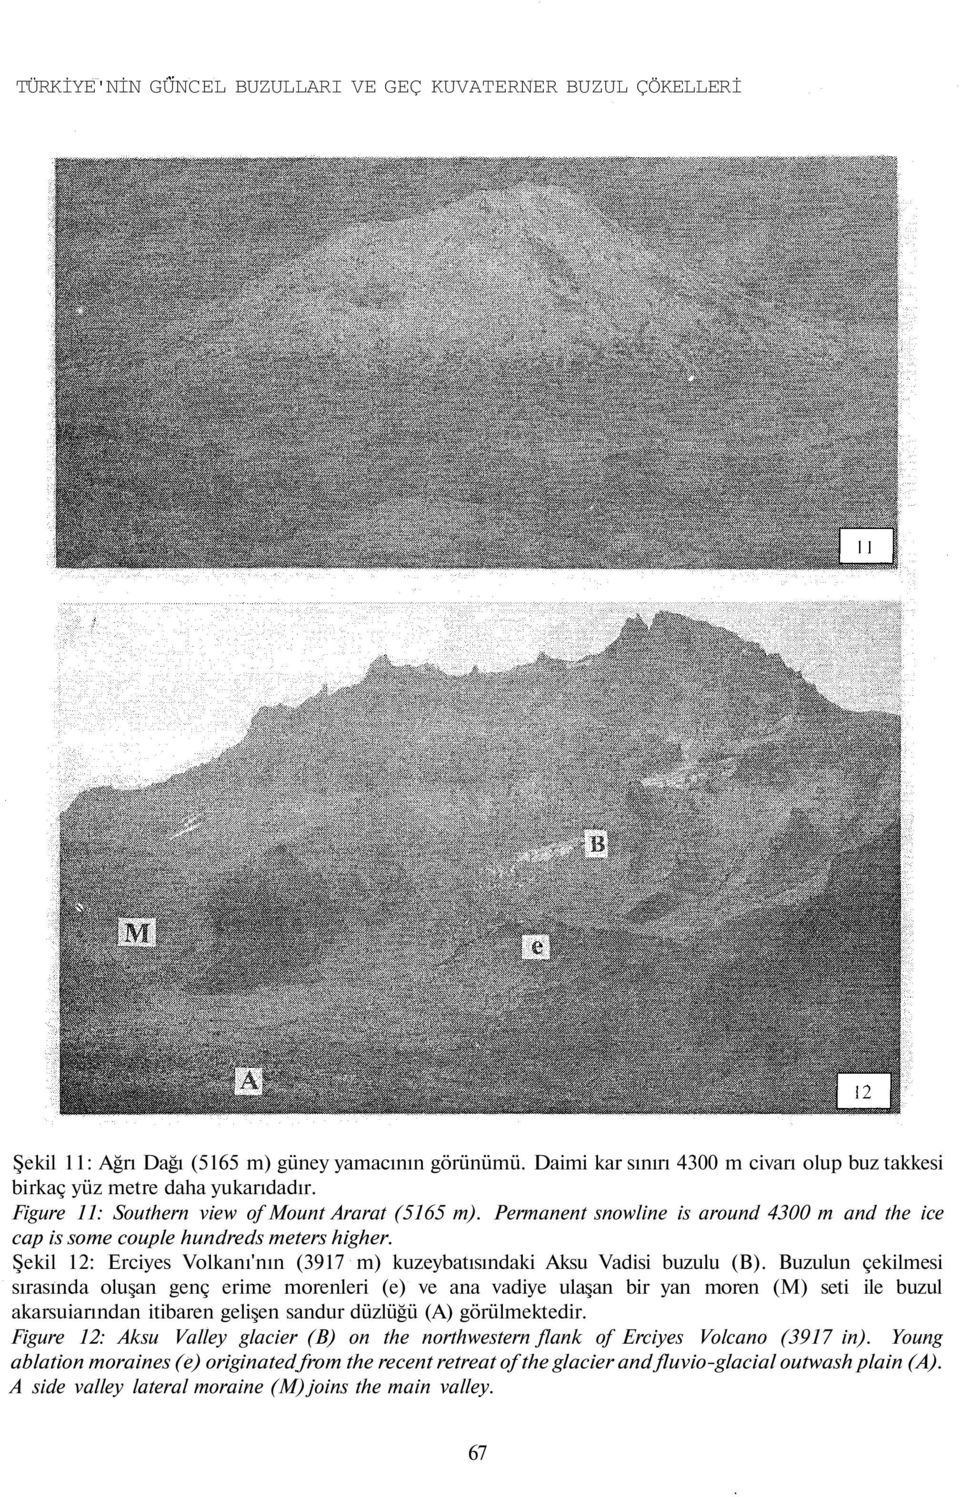 Şekil 12: Erciyes Volkanı'nın (3917 m) kuzeybatısındaki Aksu Vadisi buzulu (B).